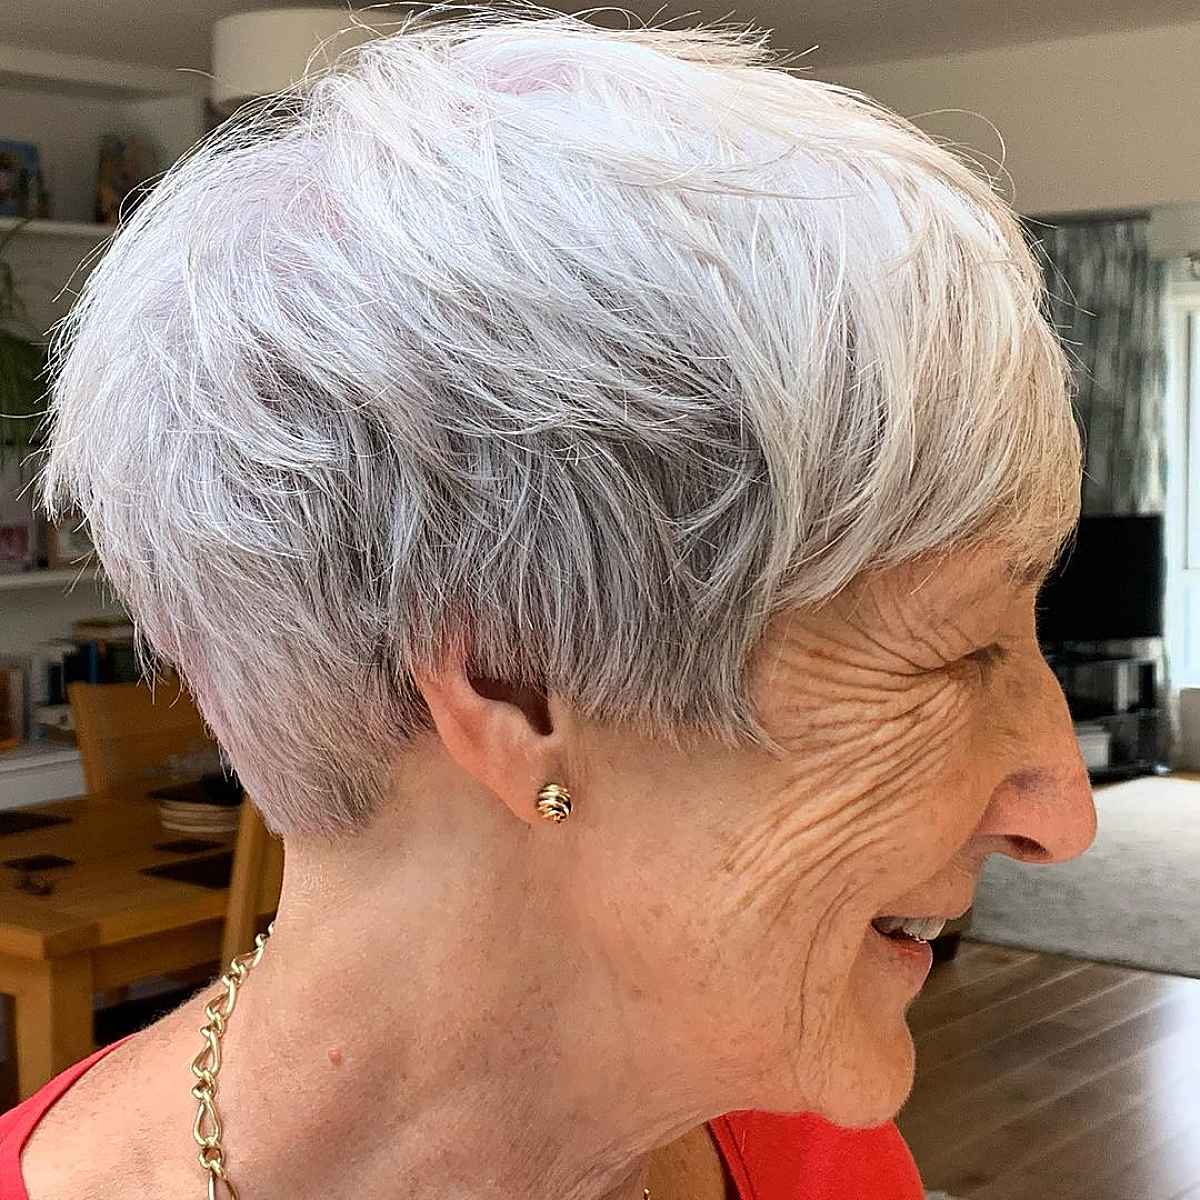 Short Choppy Hairstyle for Senior Women over 70